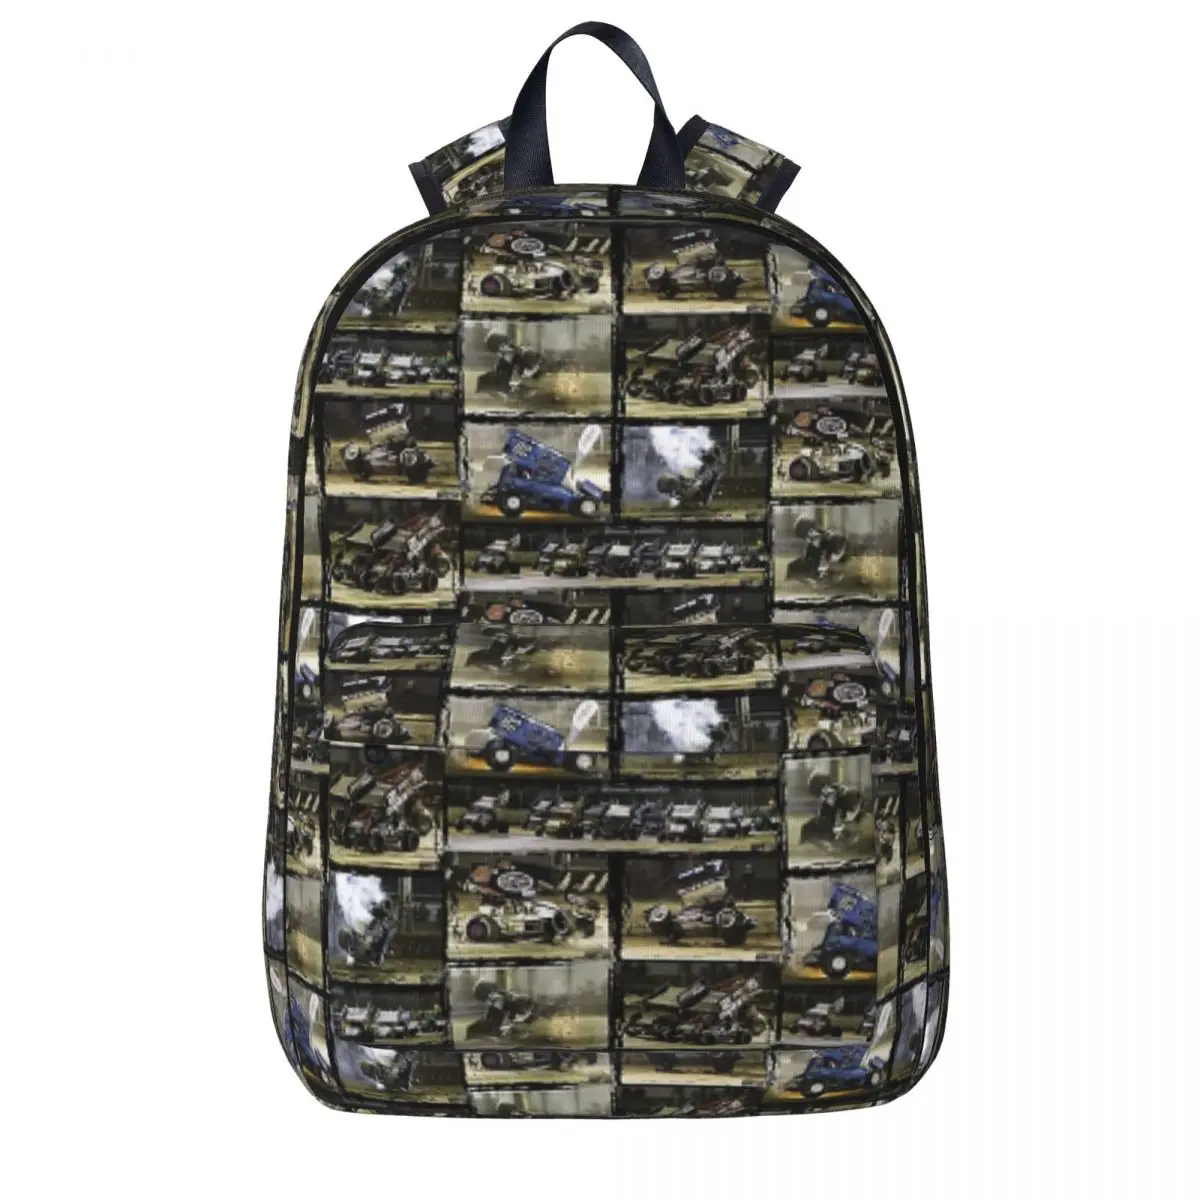 Sprint Car Crashes And Action Montage. Backpacks Large Capacity Student Book bag Shoulder Bag Laptop Rucksack Travel Rucksack